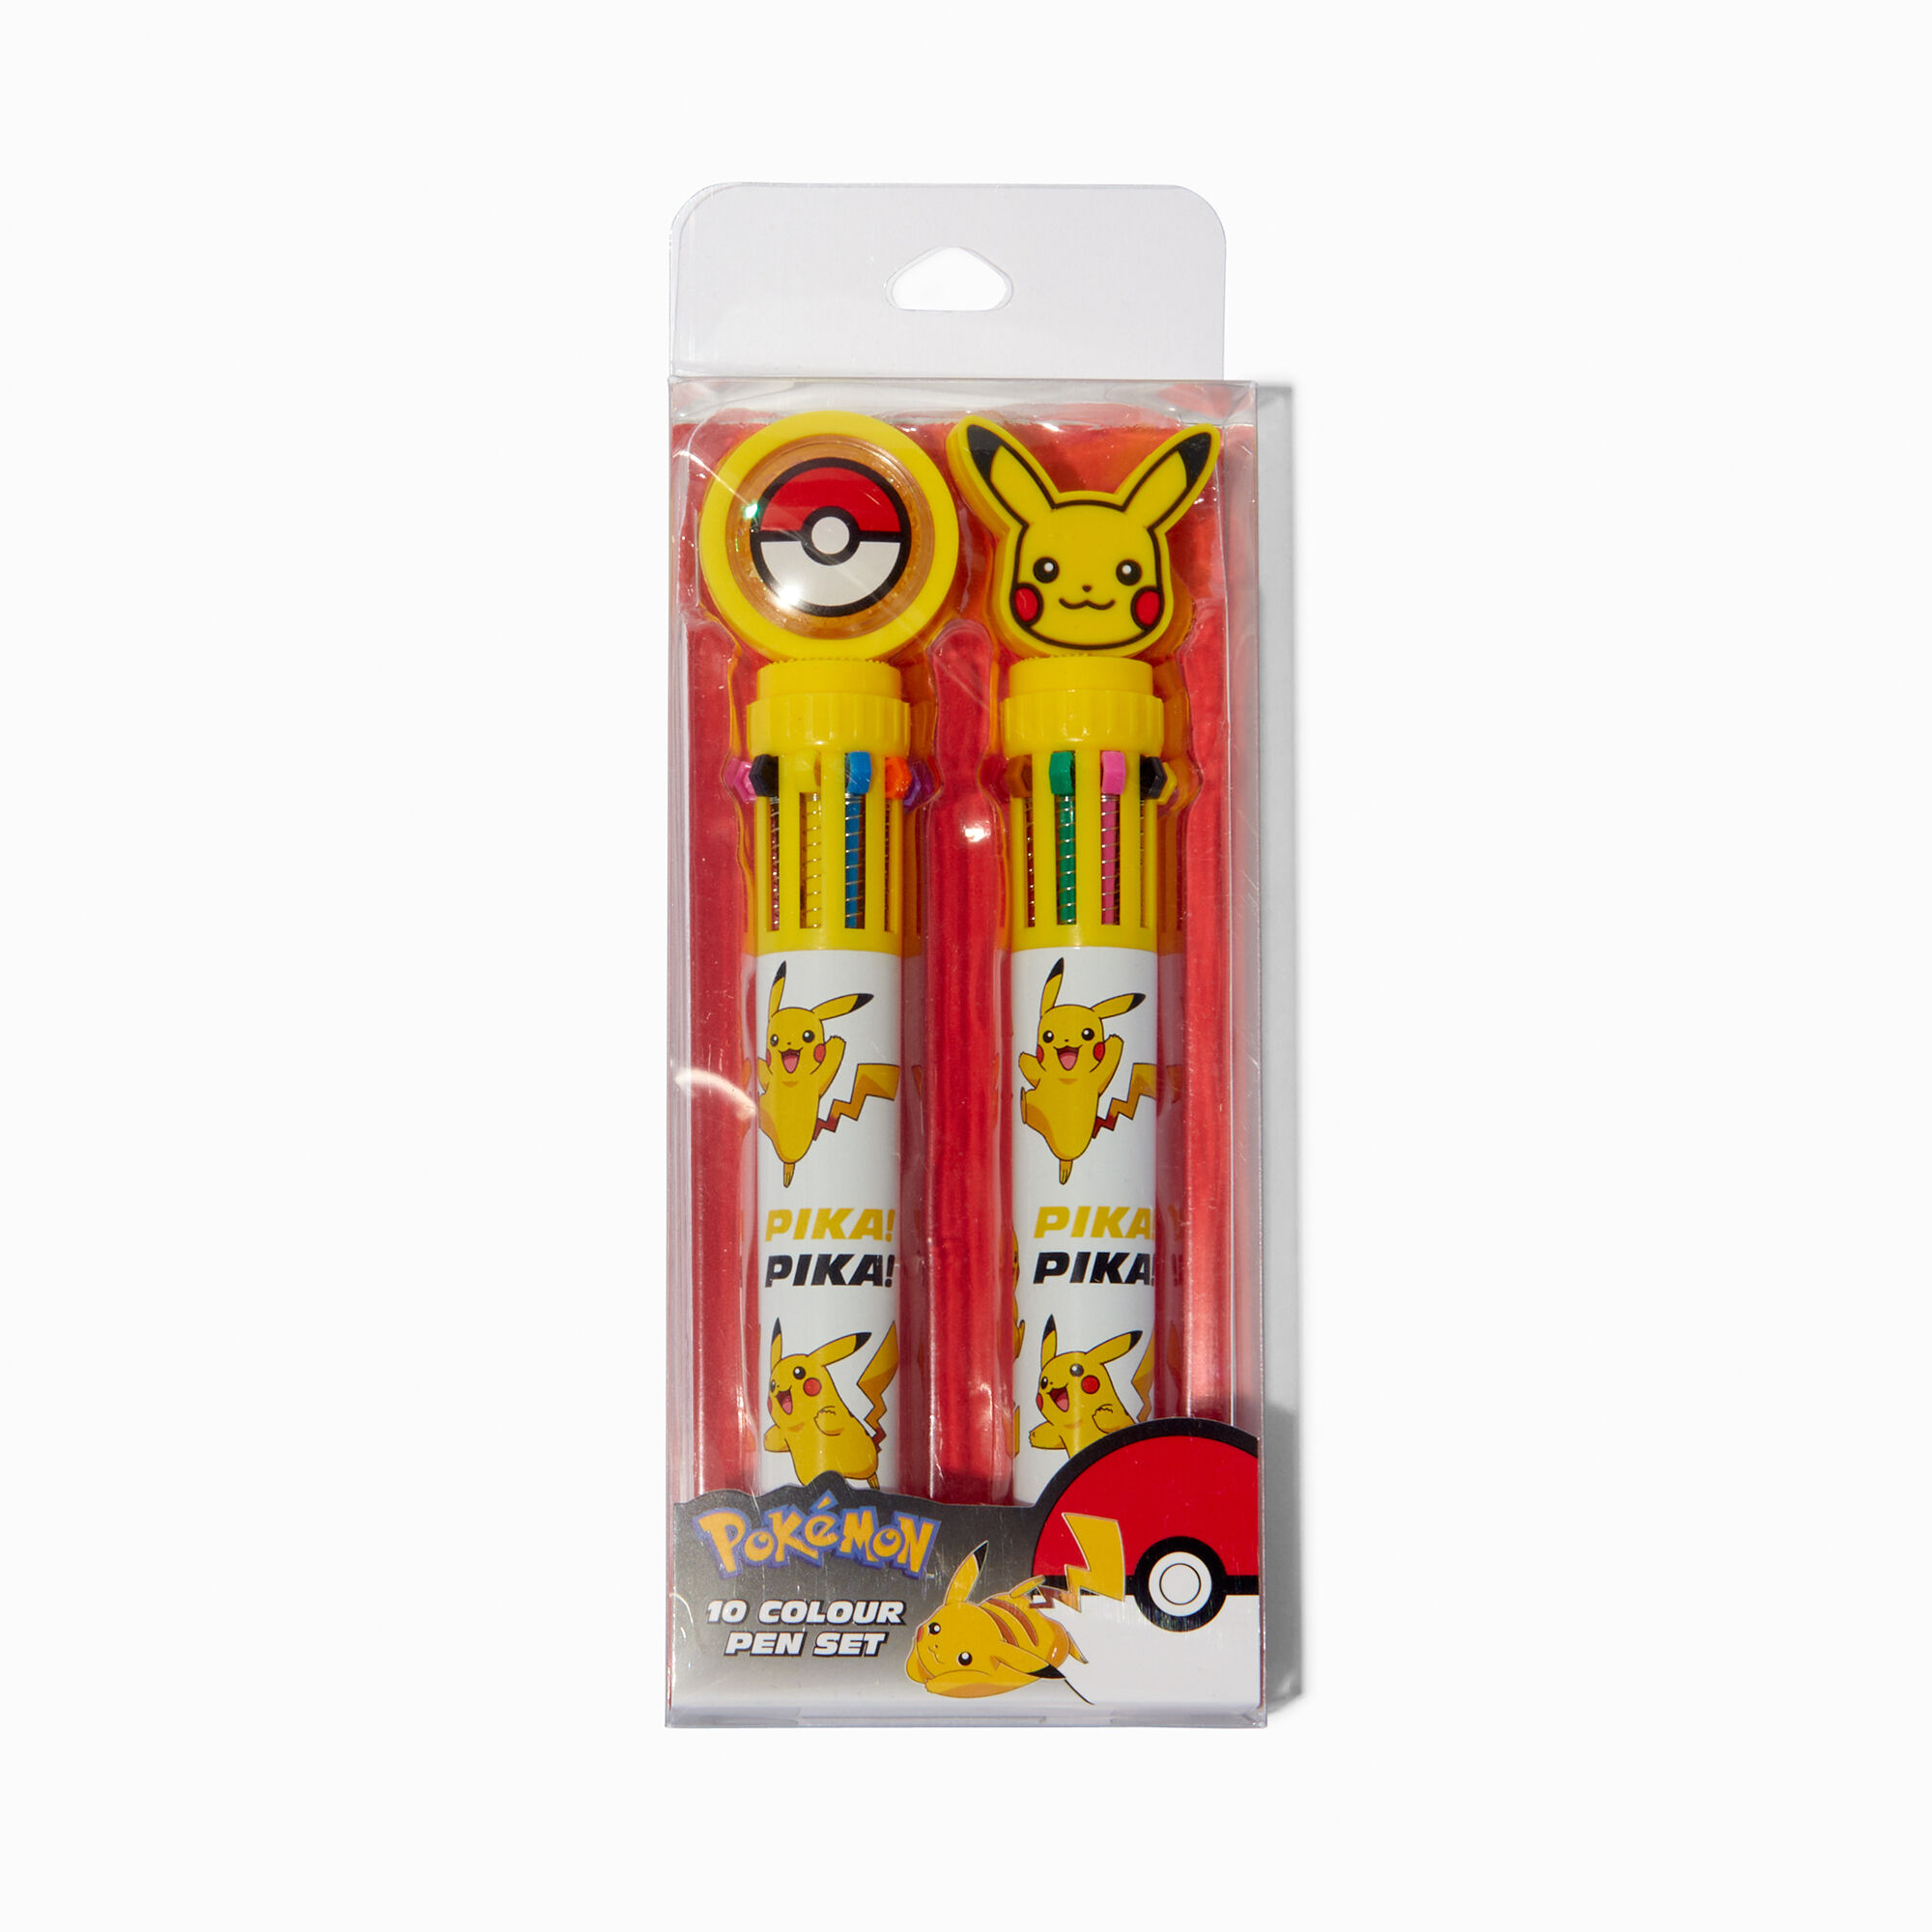 View Claires Pokémon colored Pen Set 2 Pack information